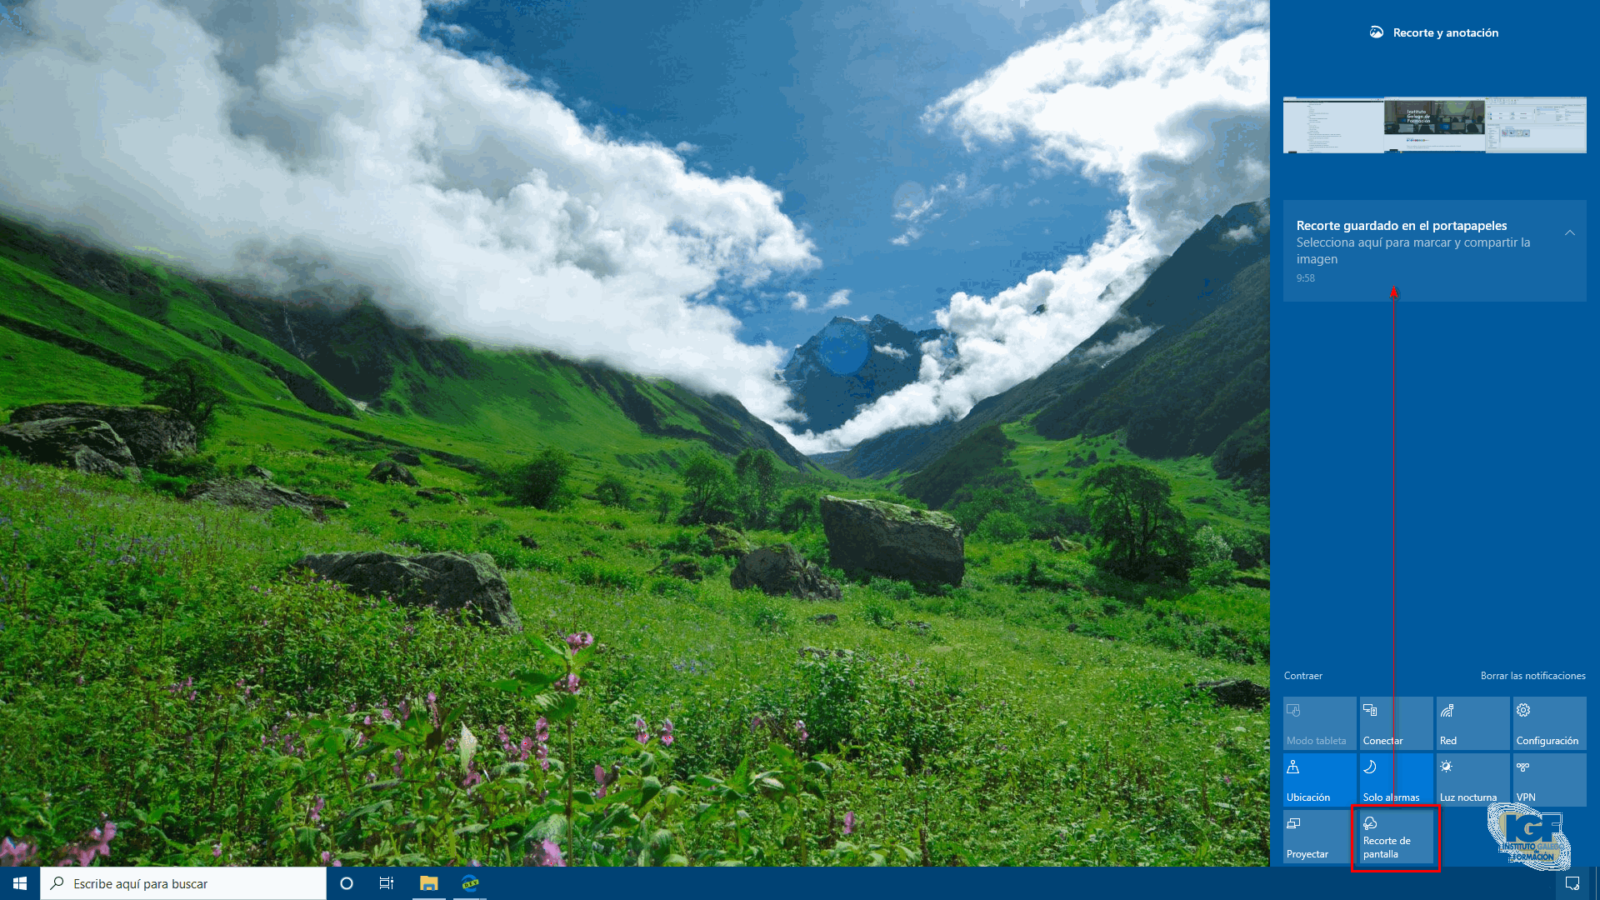 Recorte y animación en Windows 10 herramientas - igf.es